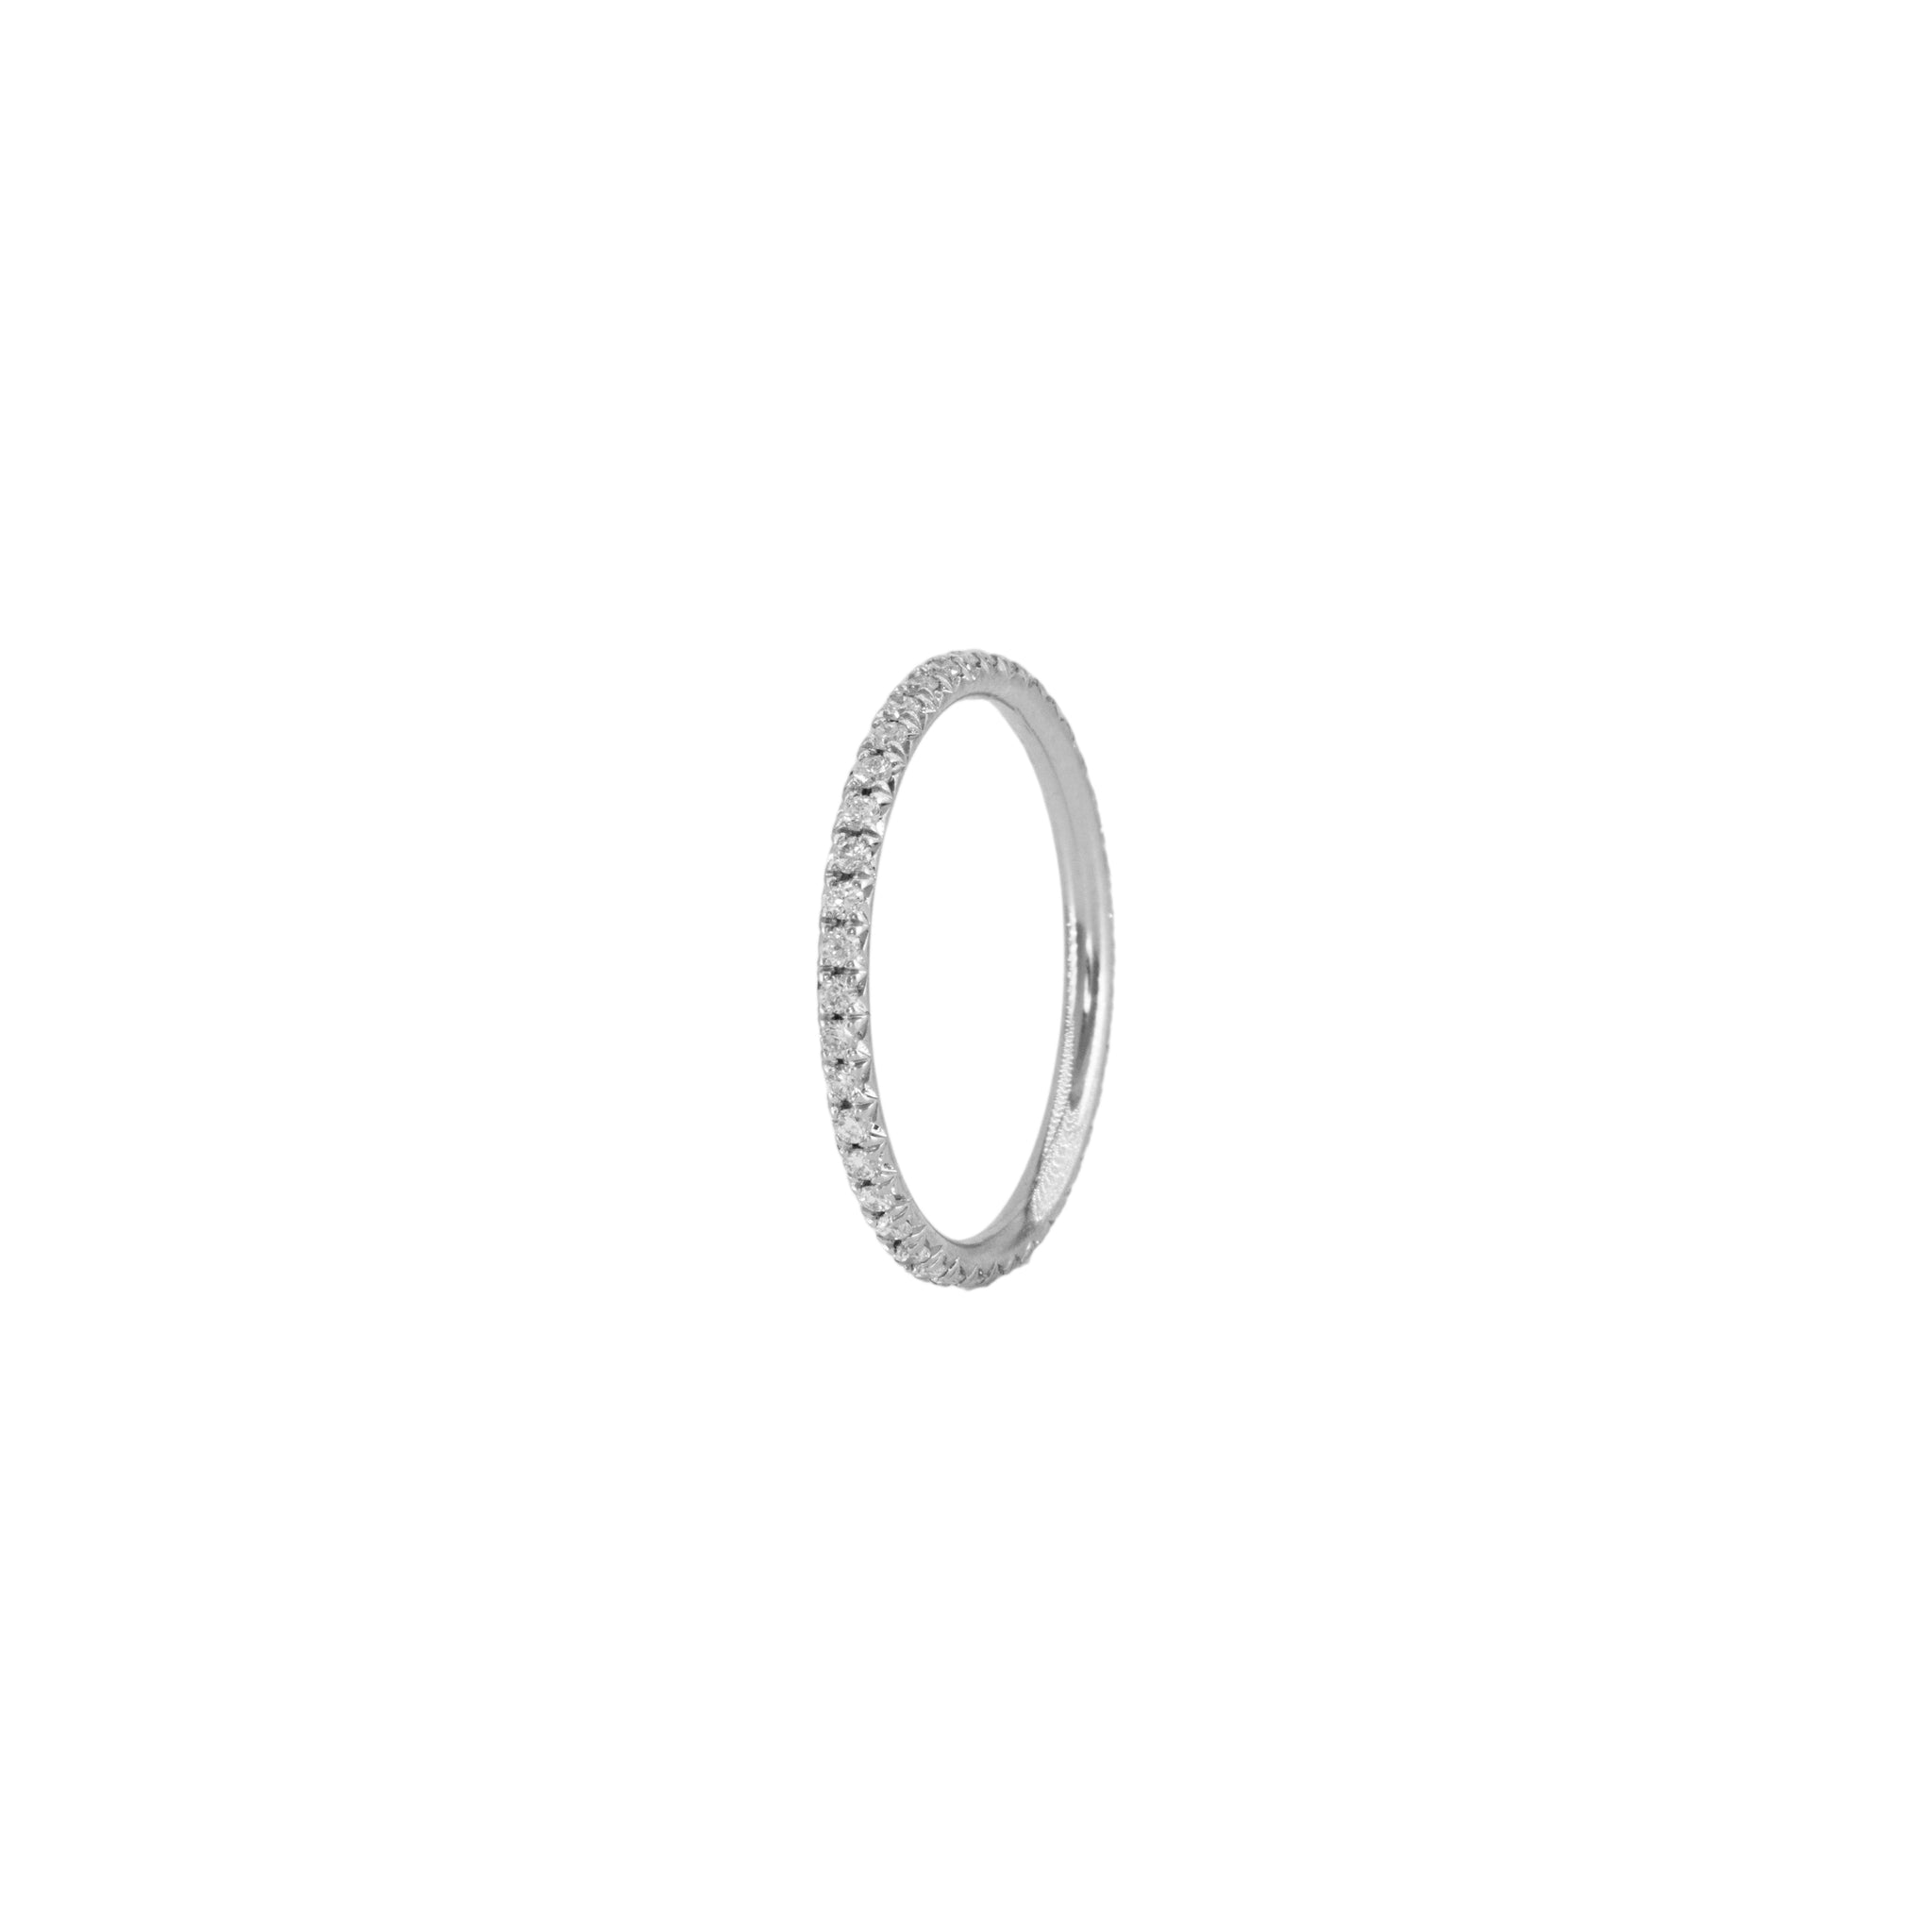 the petite ètoile blanc eternity ring